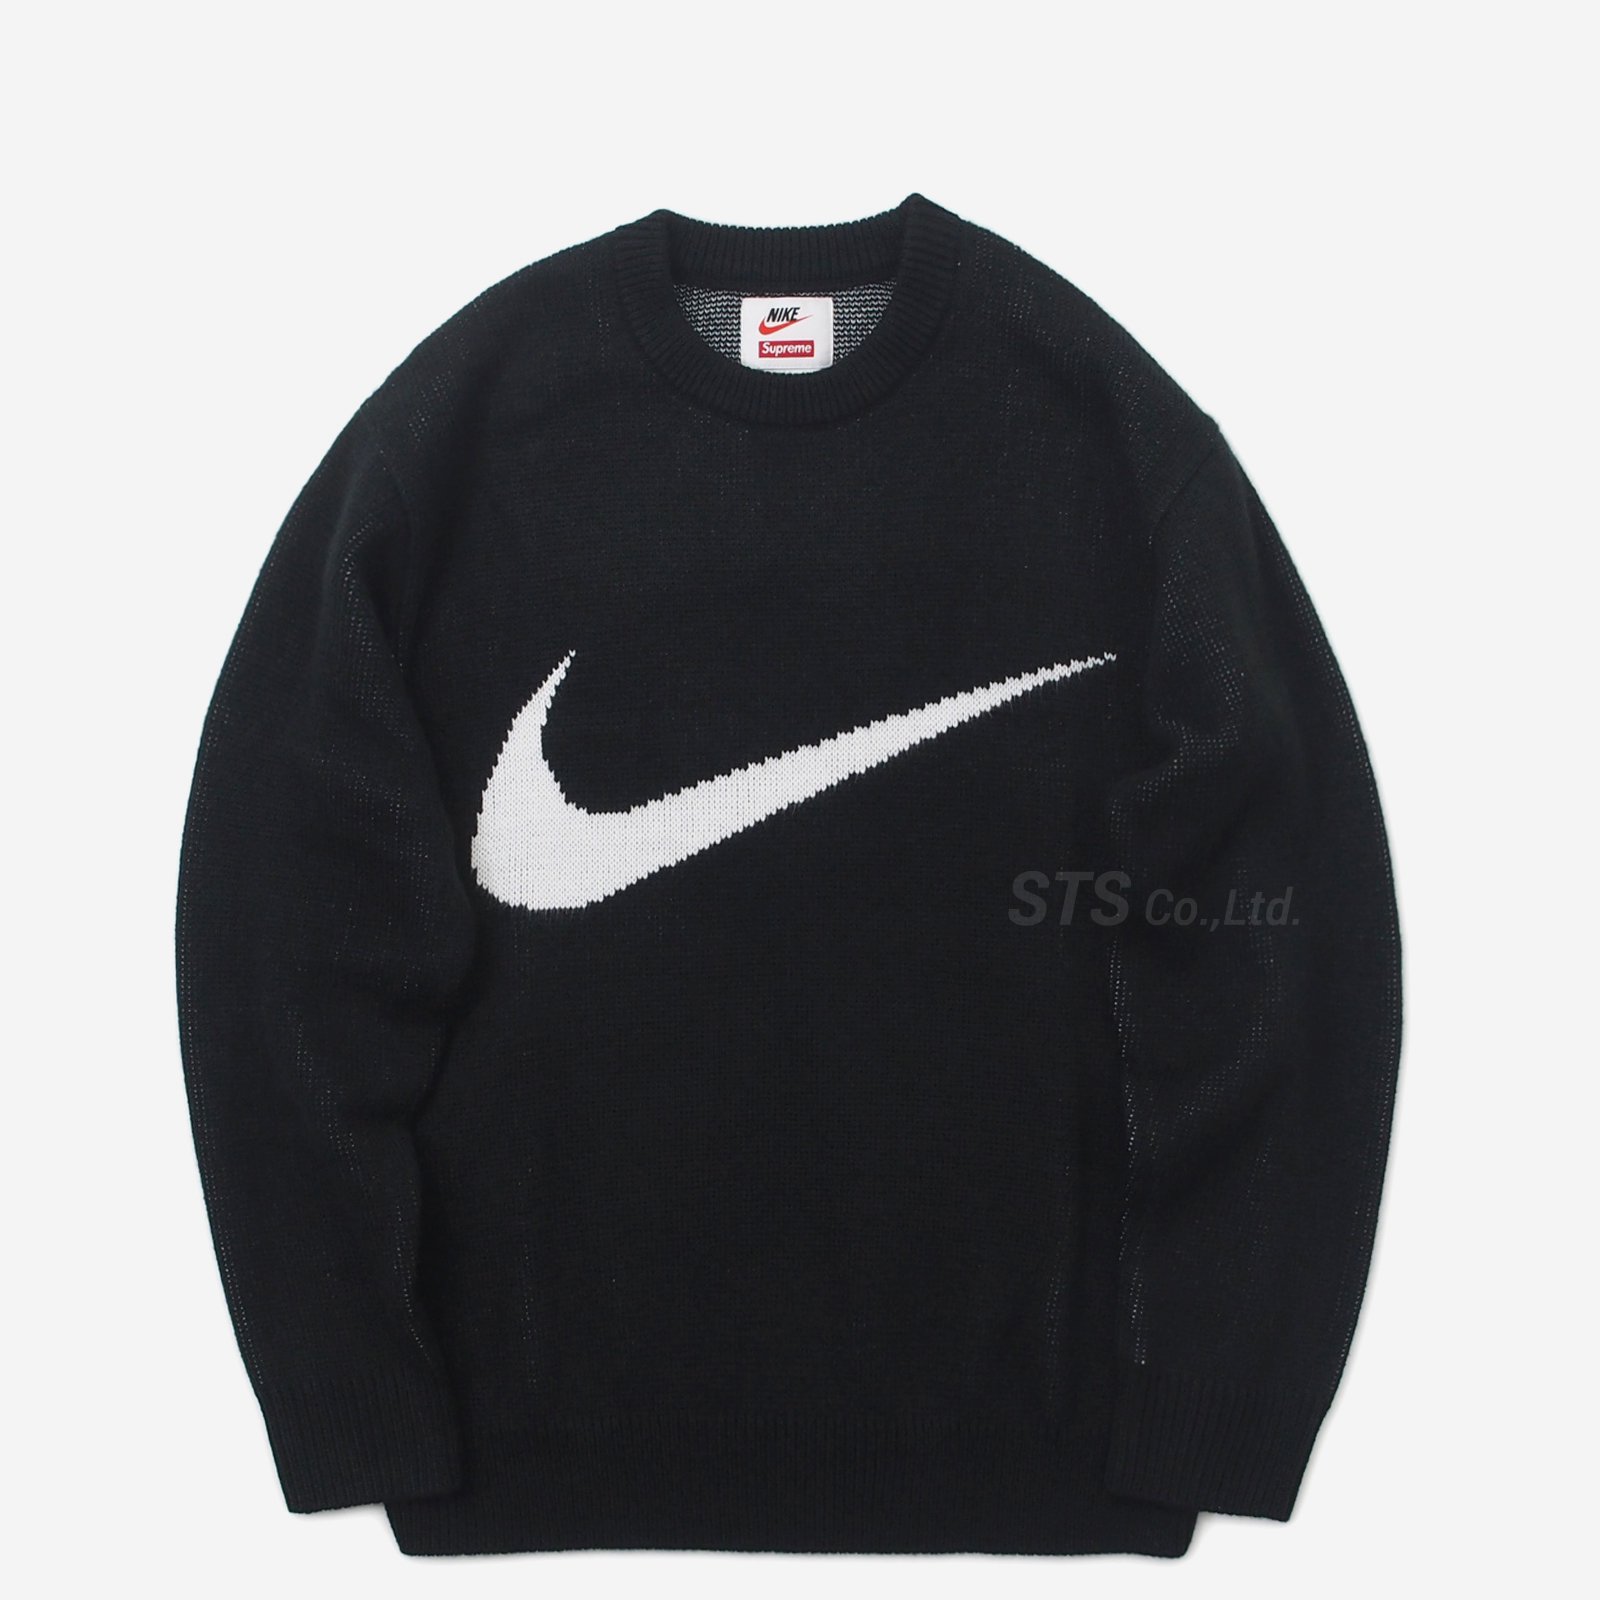 ニット/セーターSupreme Nike swoosh sweater Mサイズ